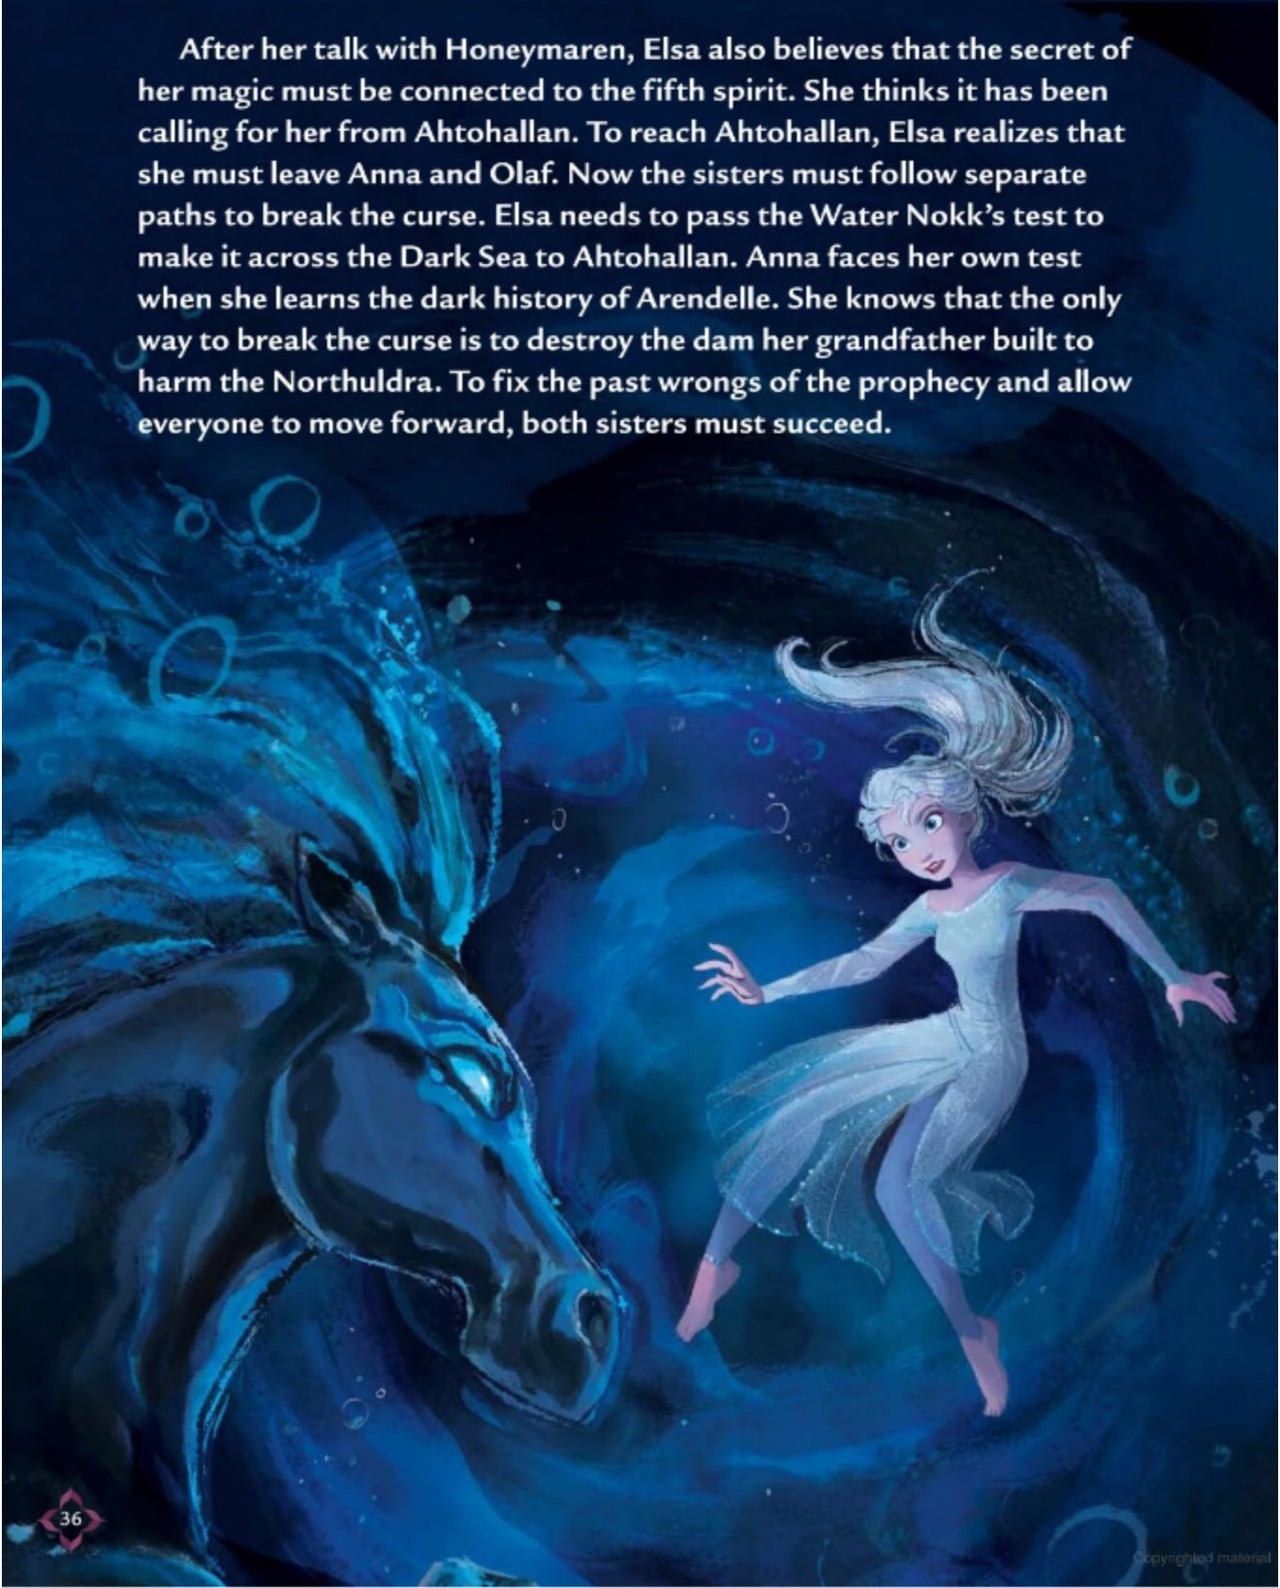 Frozen 2 movie theatre storybook part 3 by blueappleheart89 on DeviantArt